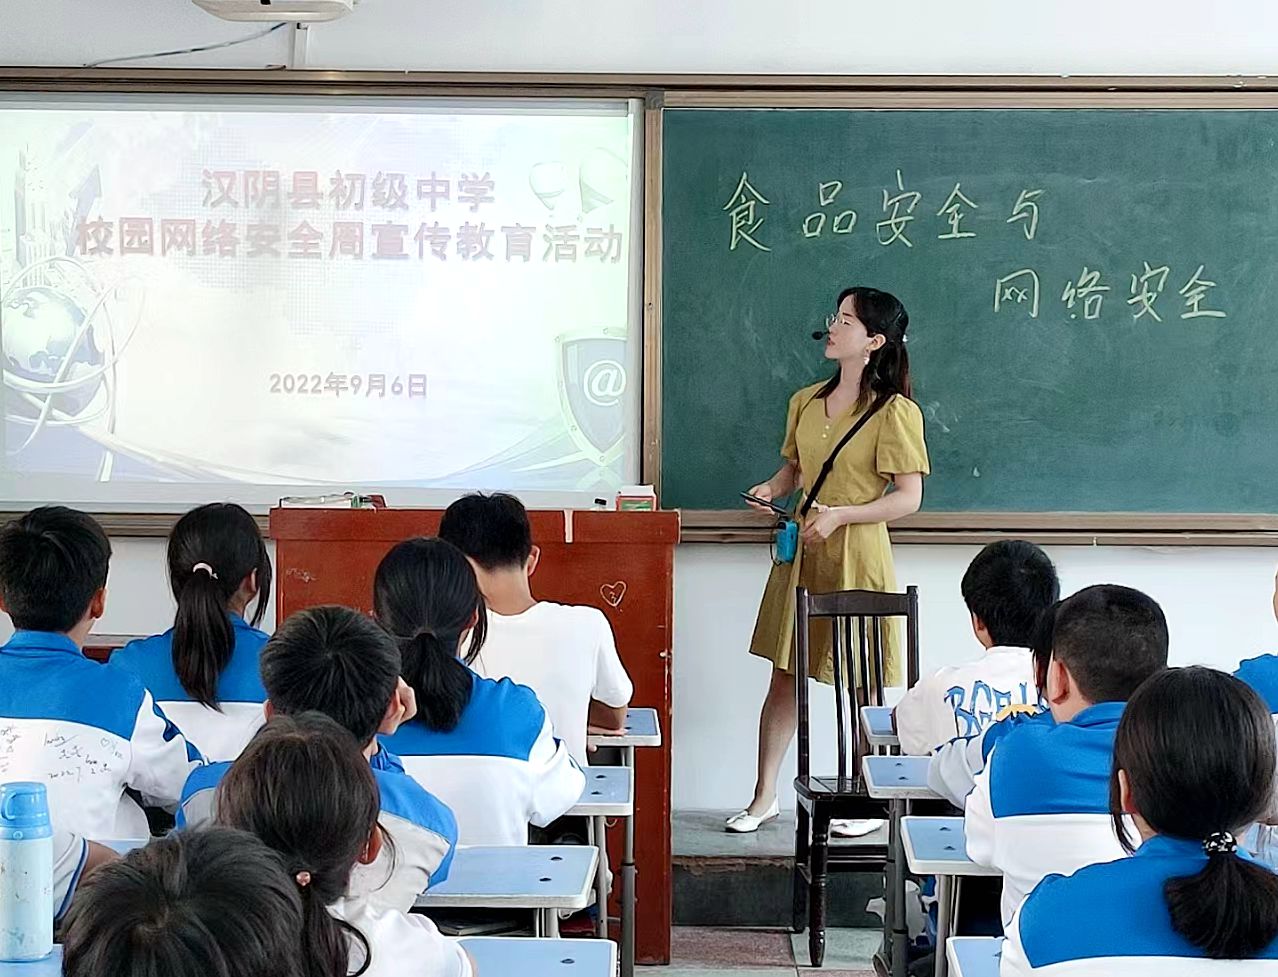 汉阴县初级中学开展网络安全主题宣传教育活动